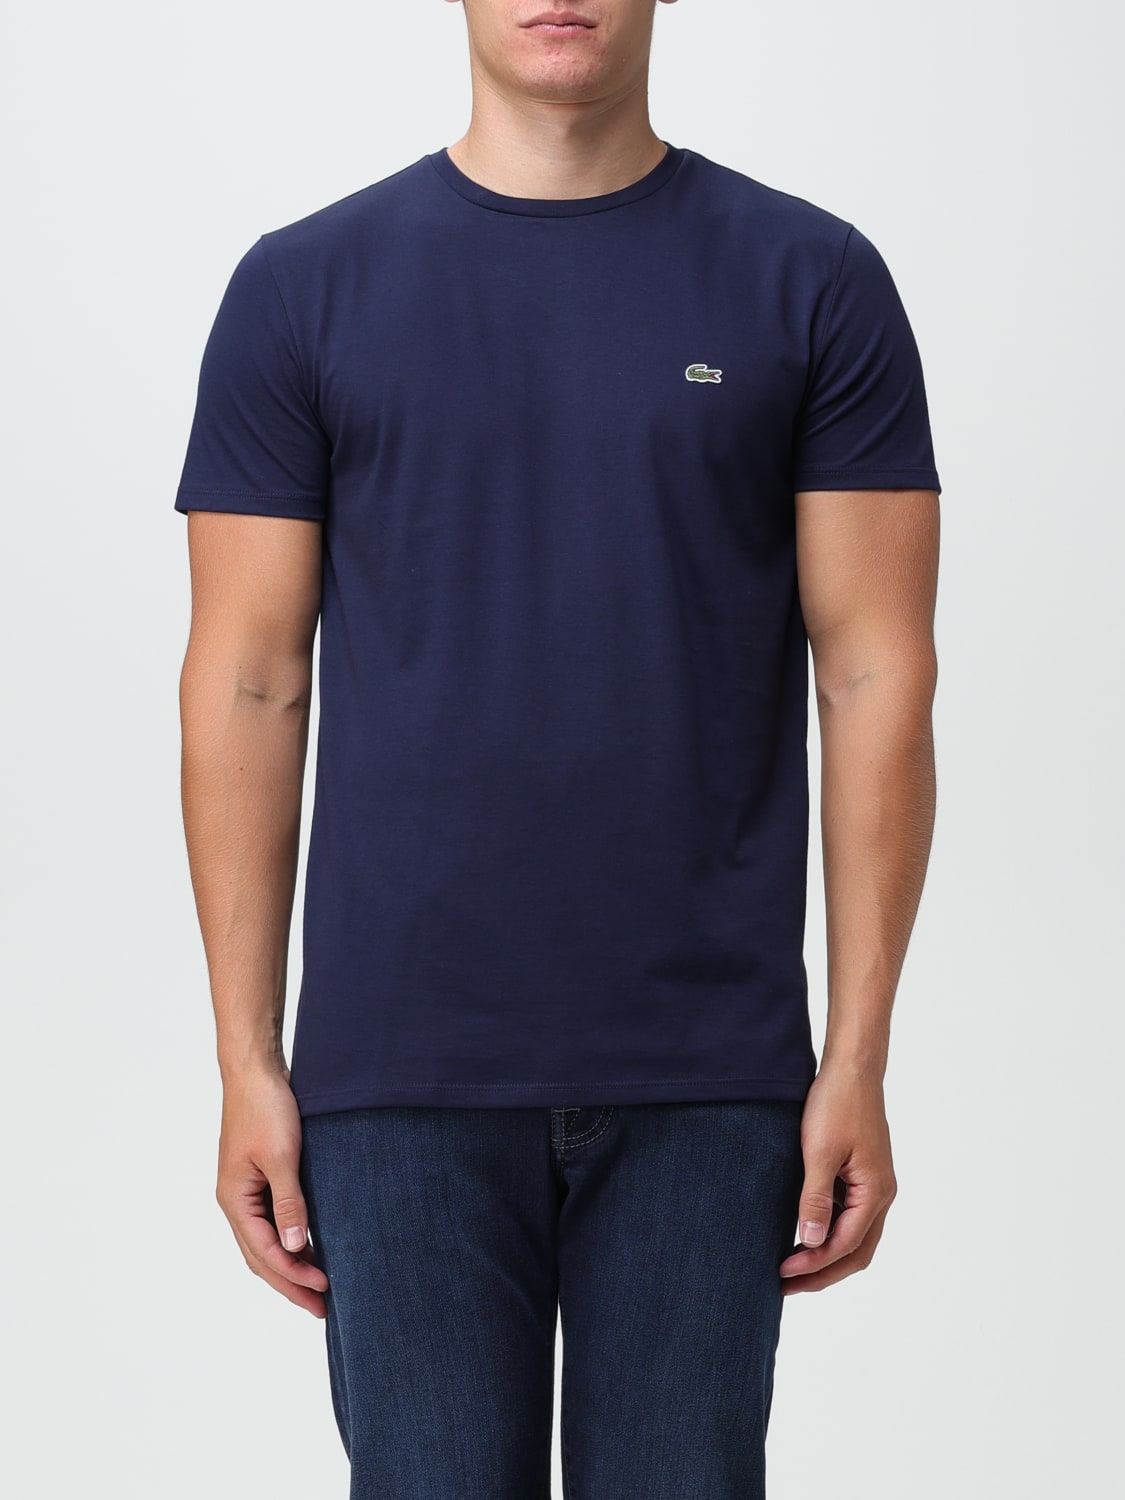 LACOSTE: Camiseta para hombre, Azul Oscuro  Camiseta Lacoste TH6709 en  línea en